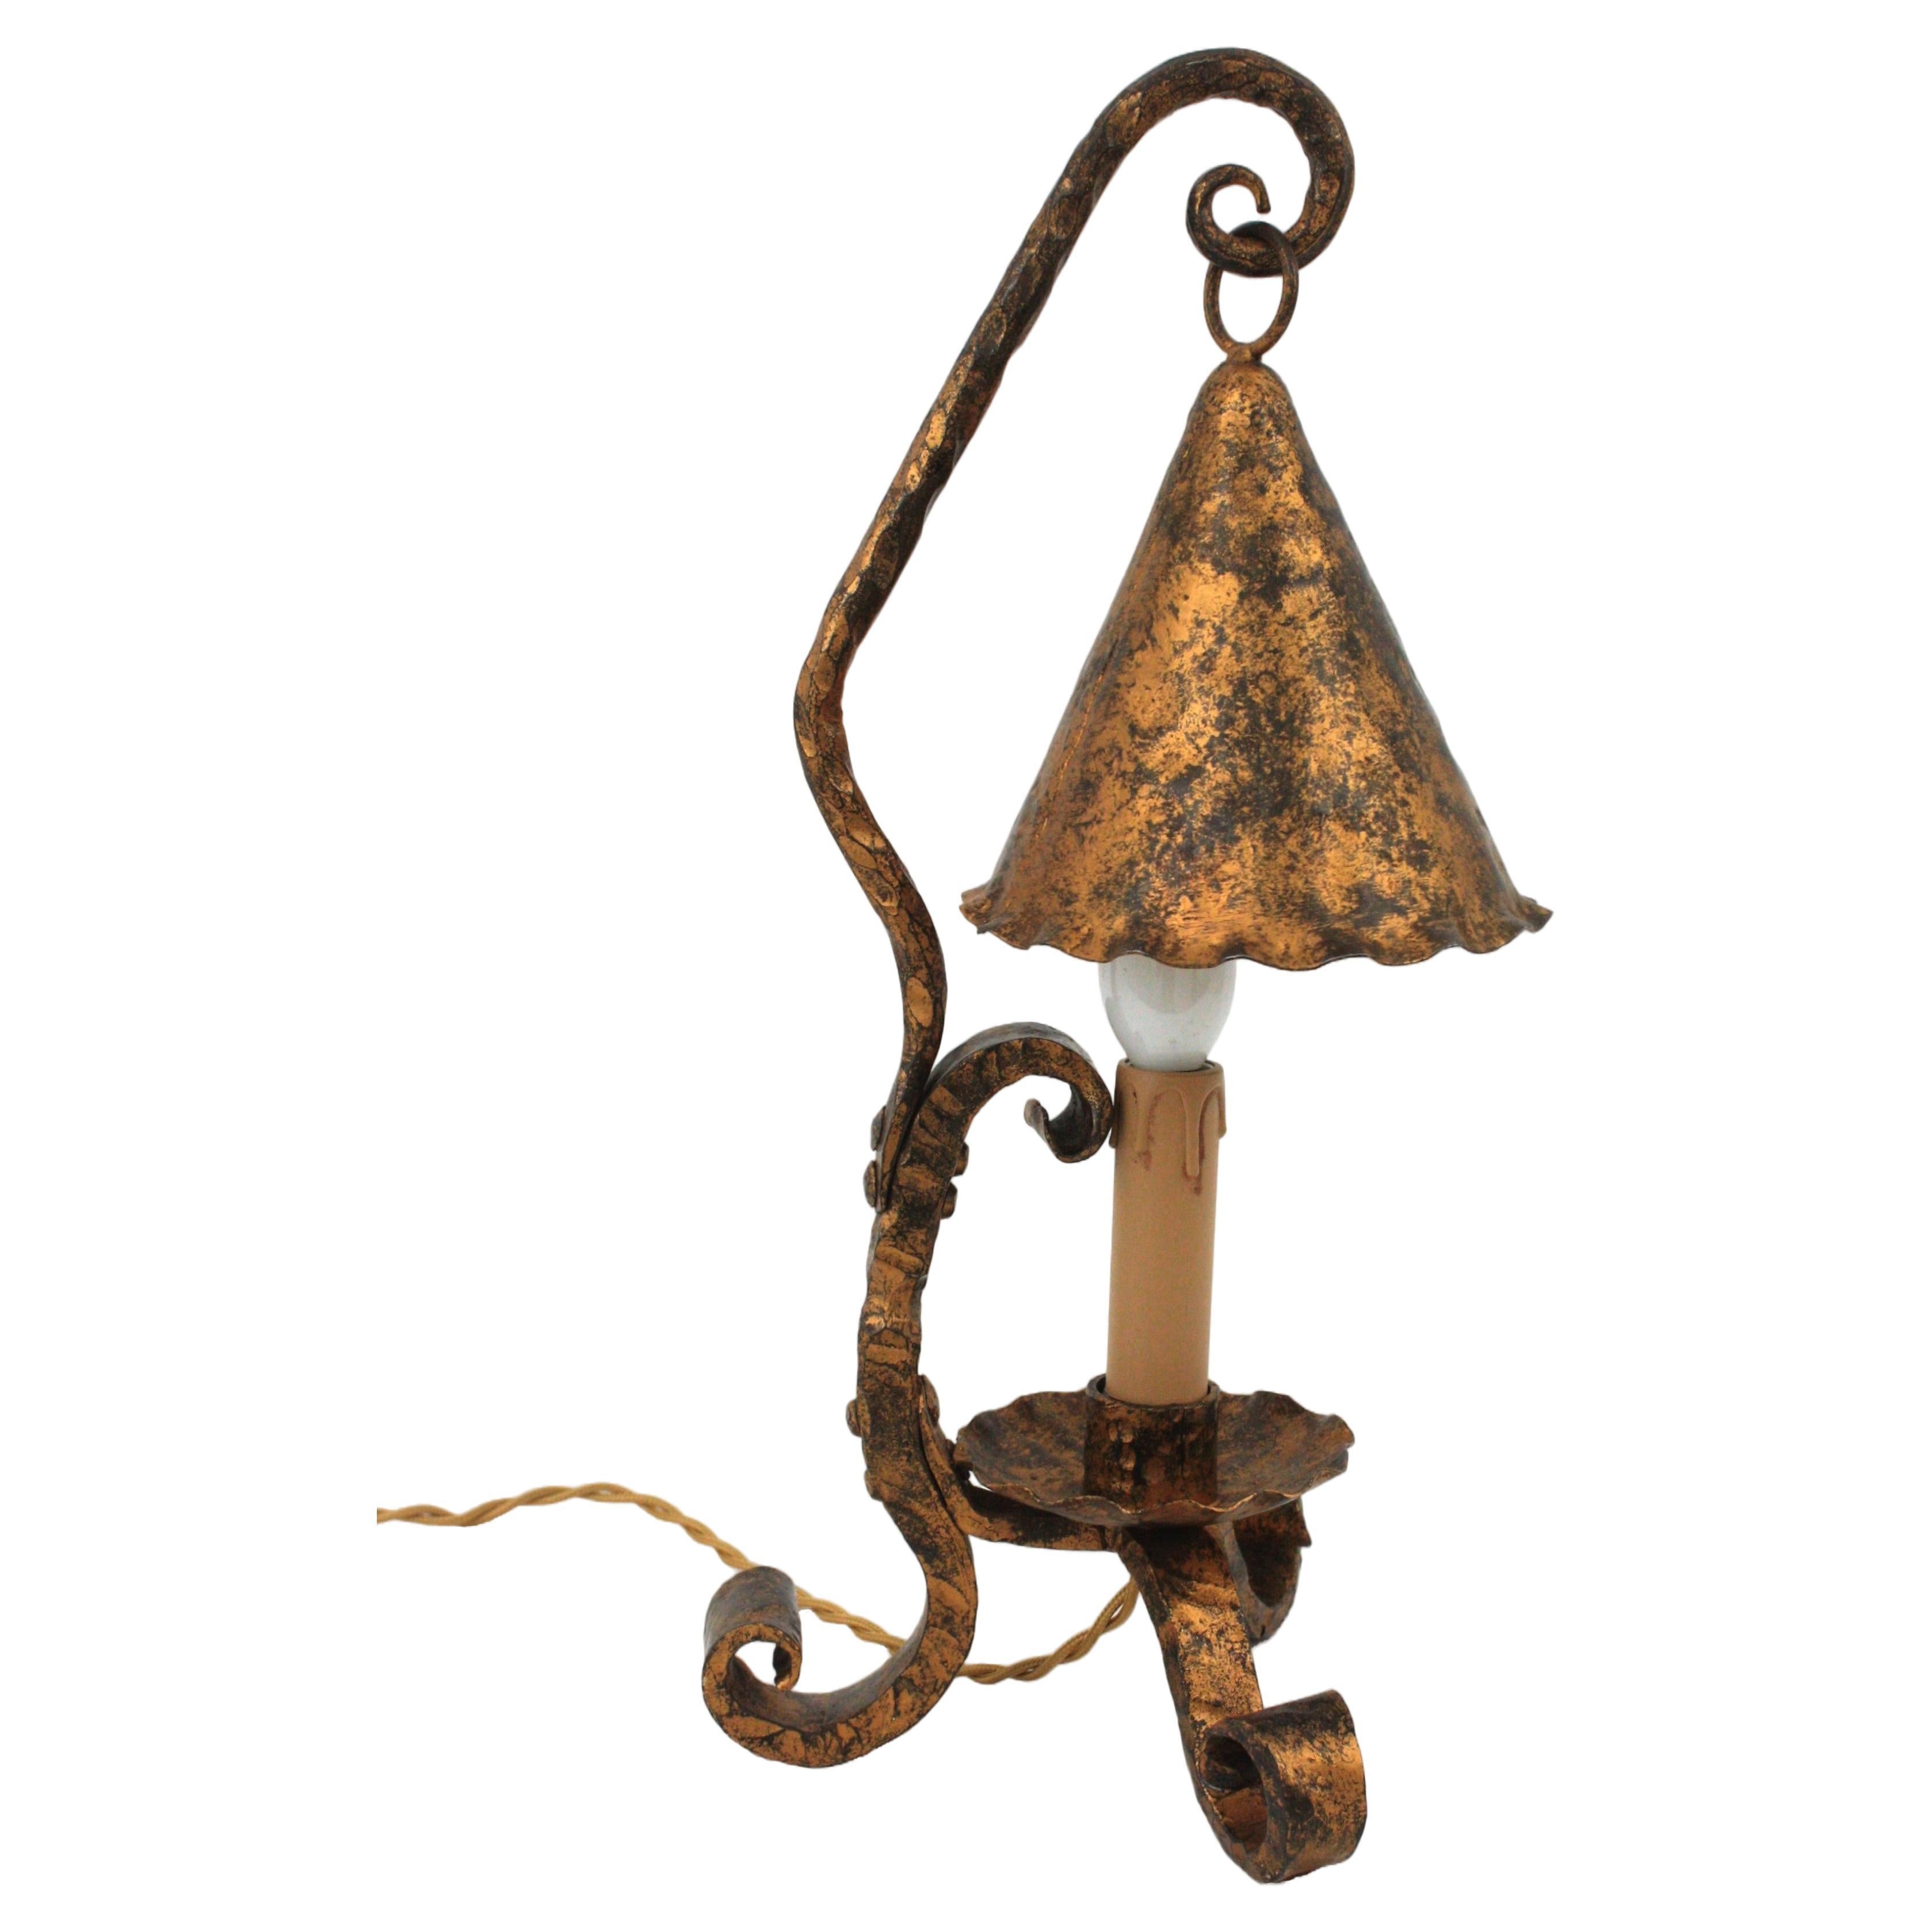 Lampe de table en fer de style médiéval, Espagne, années 1940
Magnifique lampe de table Coloni espagnole forgée à la main en fer avec une finition patinée dorée.
Pièce debout en forme de trépied avec des pieds terminés par des volutes. Son design,